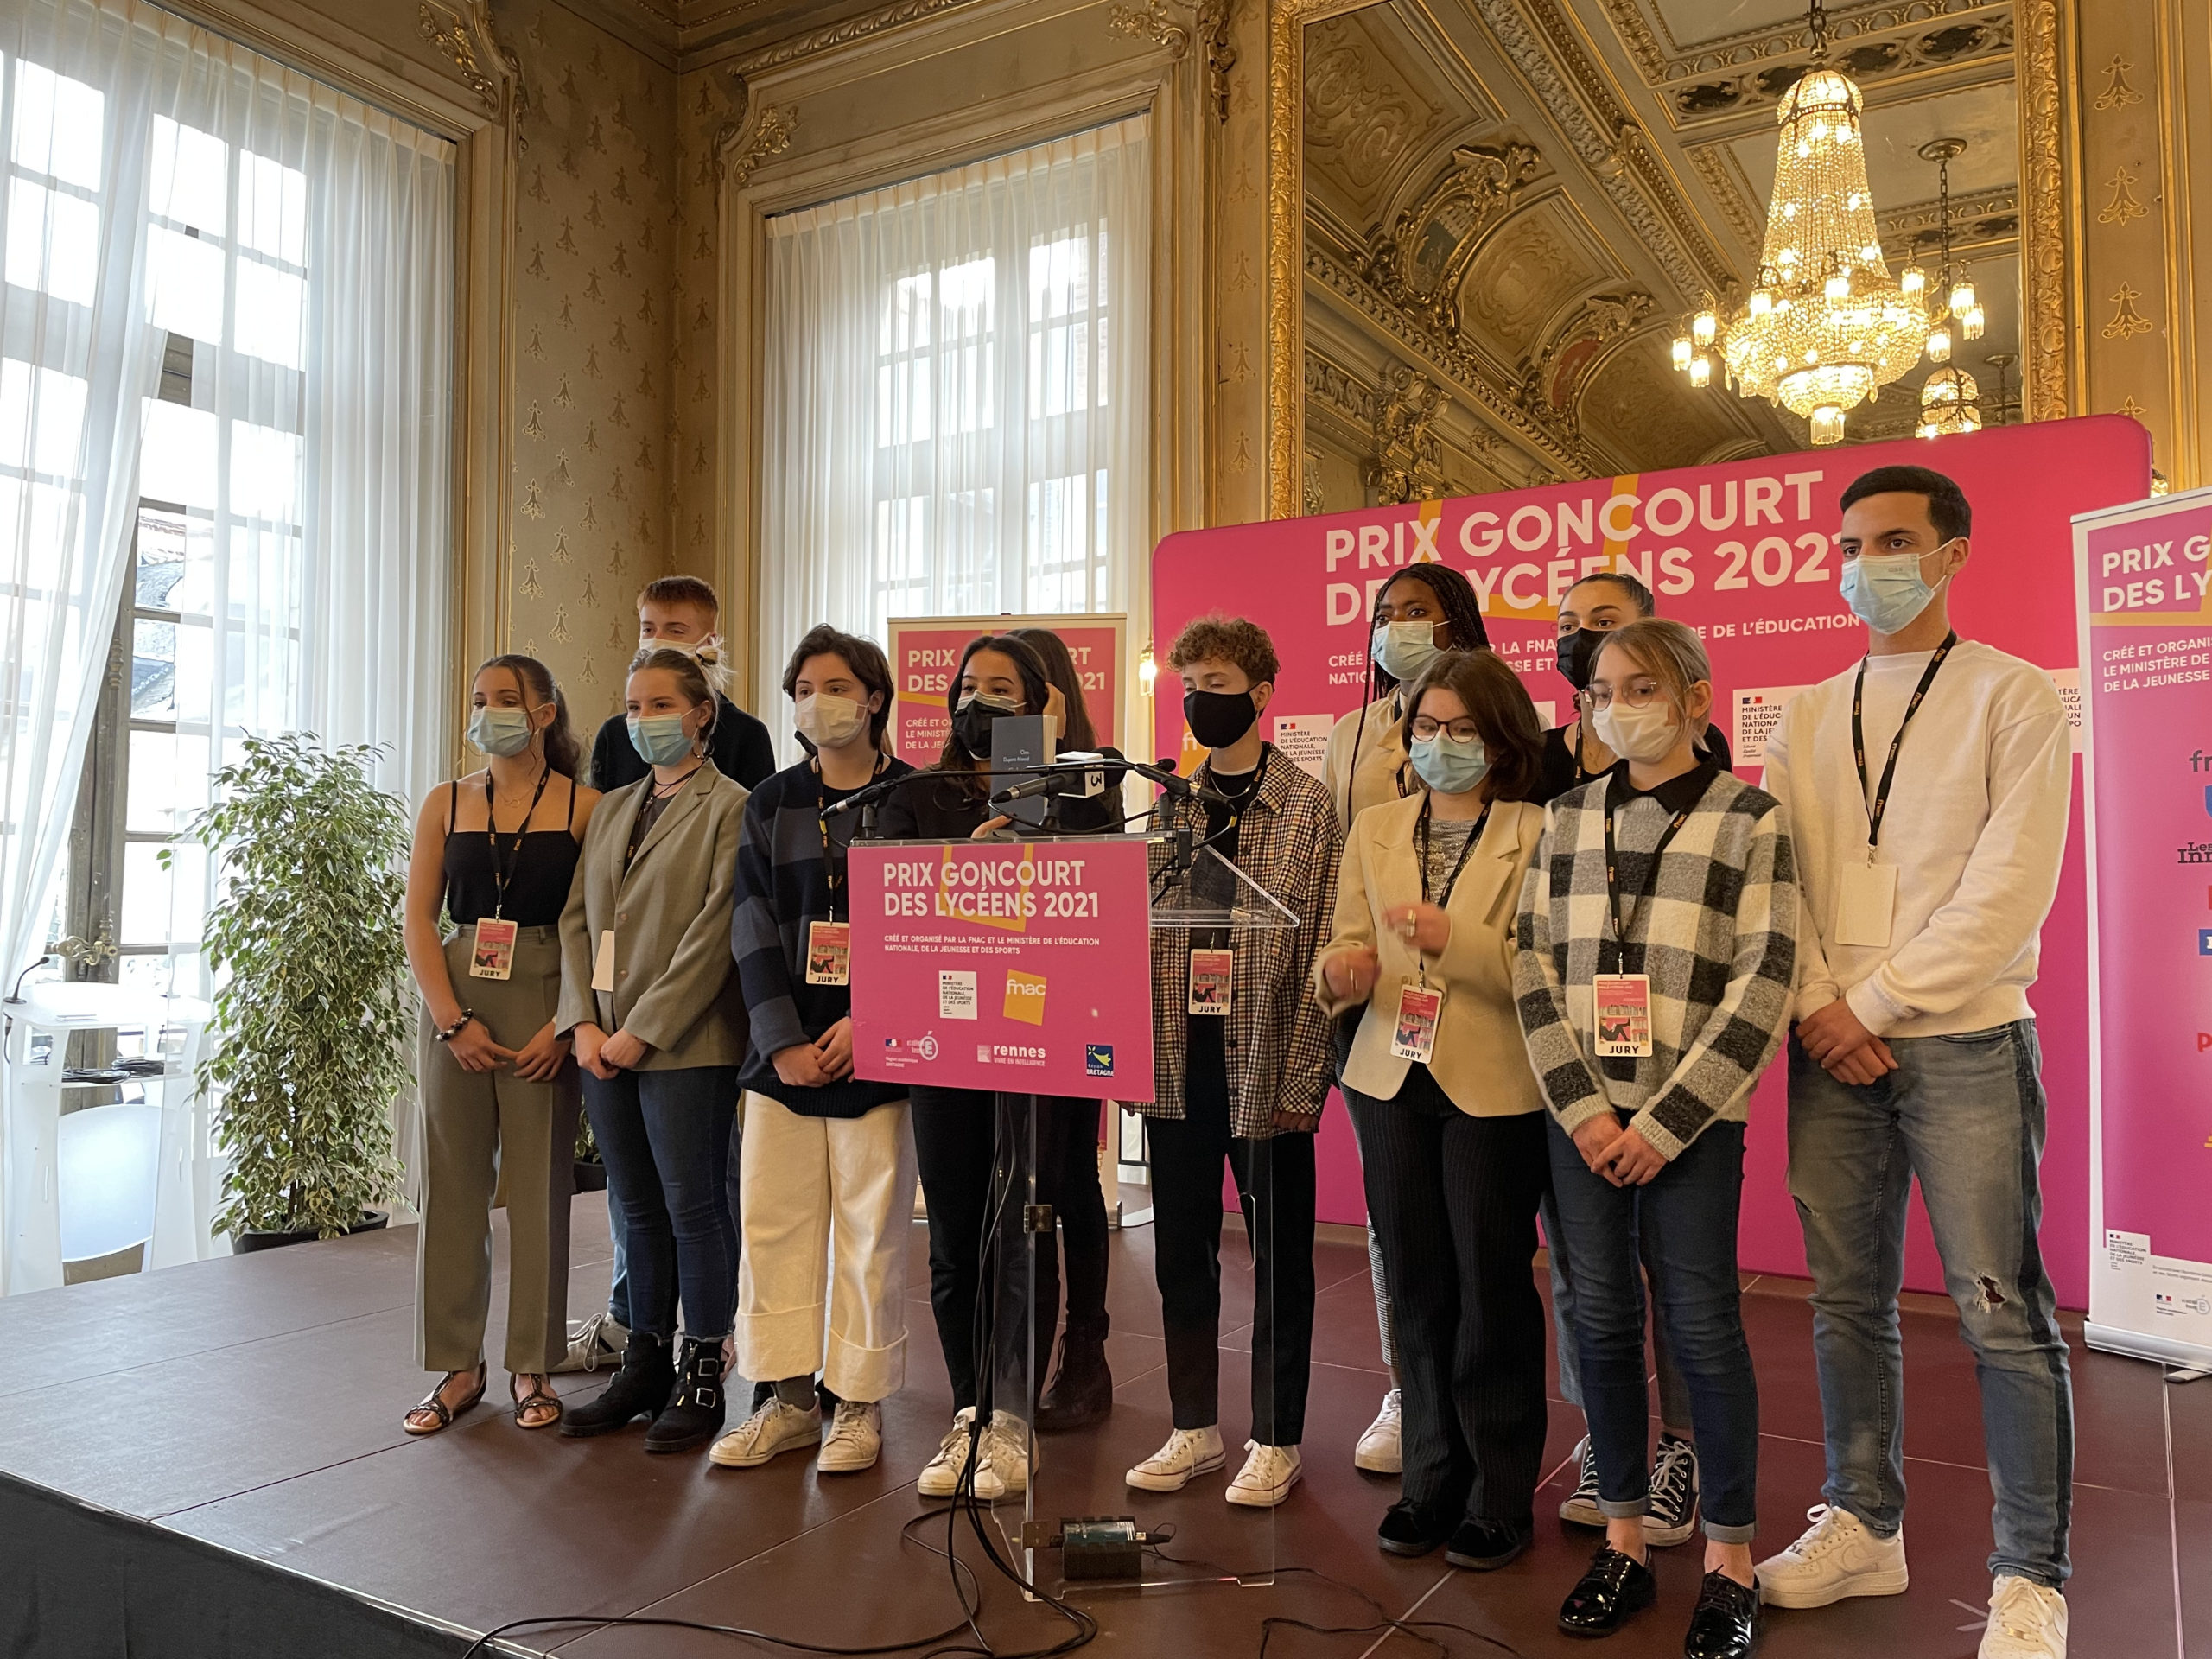 Proclamation à Rennes du Prix Goncourt des Lycéens 2019 ©Bruit de Lire